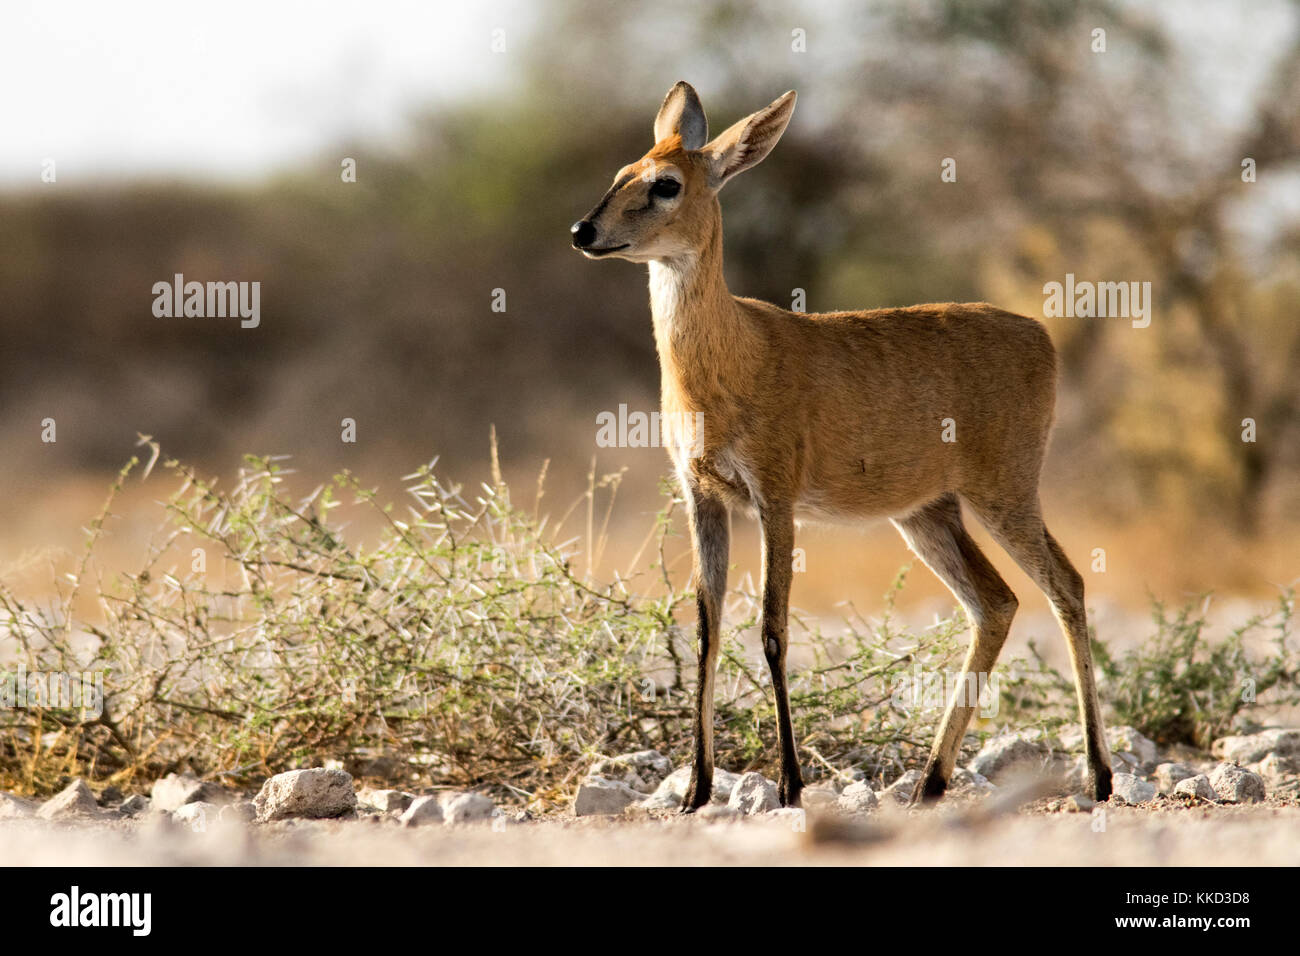 Cefalofo comune (sylvicapra grimmia) - onkolo nascondere, onguma Game Reserve, Namibia, Africa Foto Stock